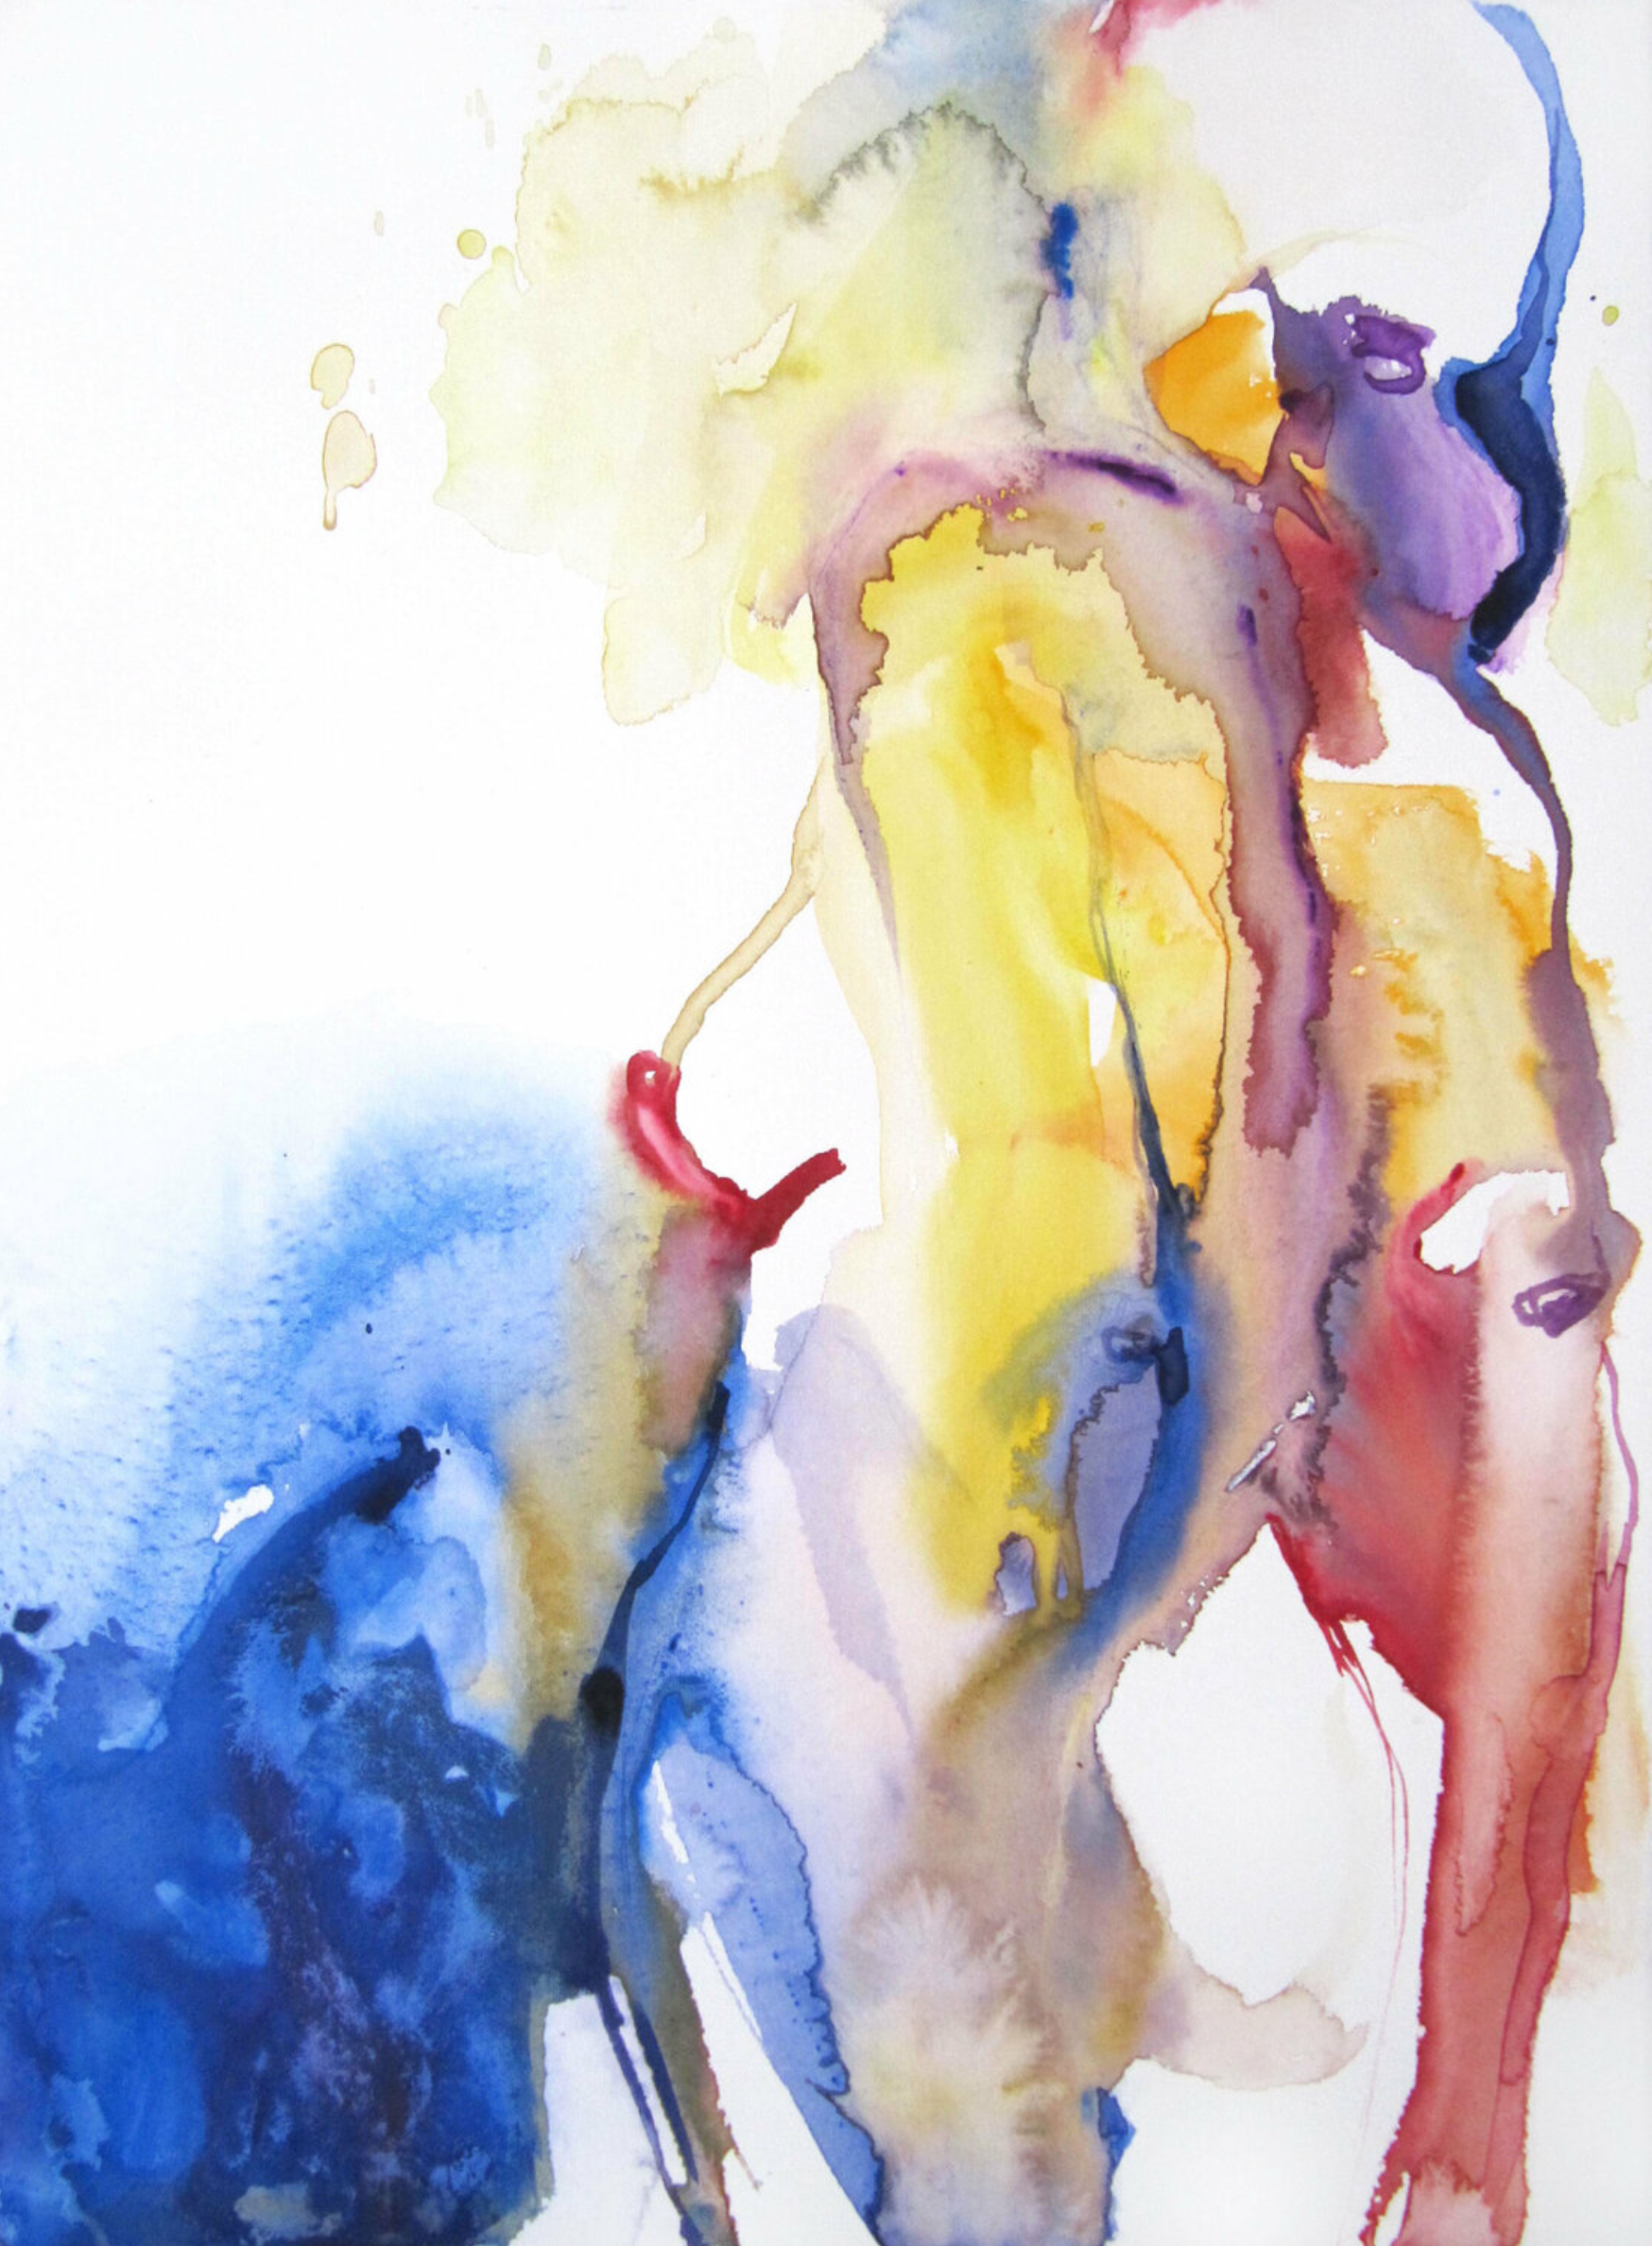 L'opera "Vers la mer" di Sylvia Baldeva mostra un nudo dipinto ad acquerello e semi-astratto. Seduzione, donna, femminilità, mare, silhouette, corpo femminile, espressionismo, acquerello su carta Canson®.